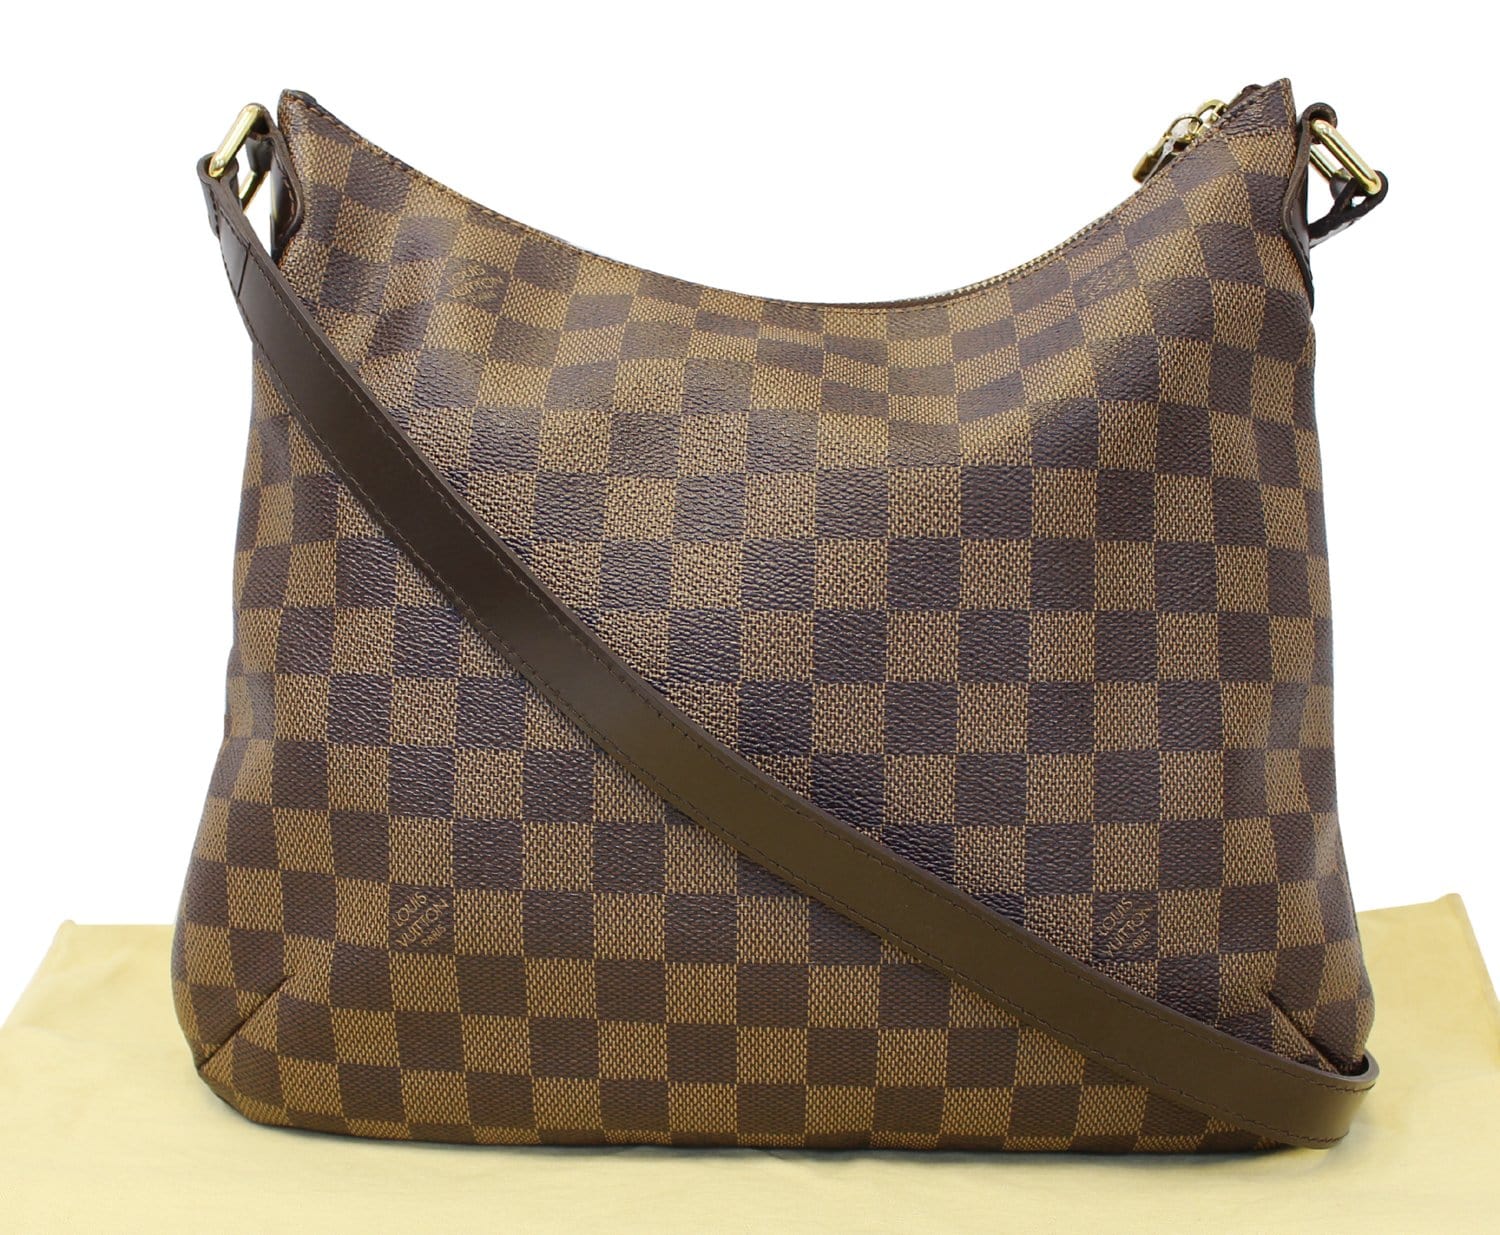 Louis Vuitton Damier Ebene Canvas Top Handle Bag on SALE